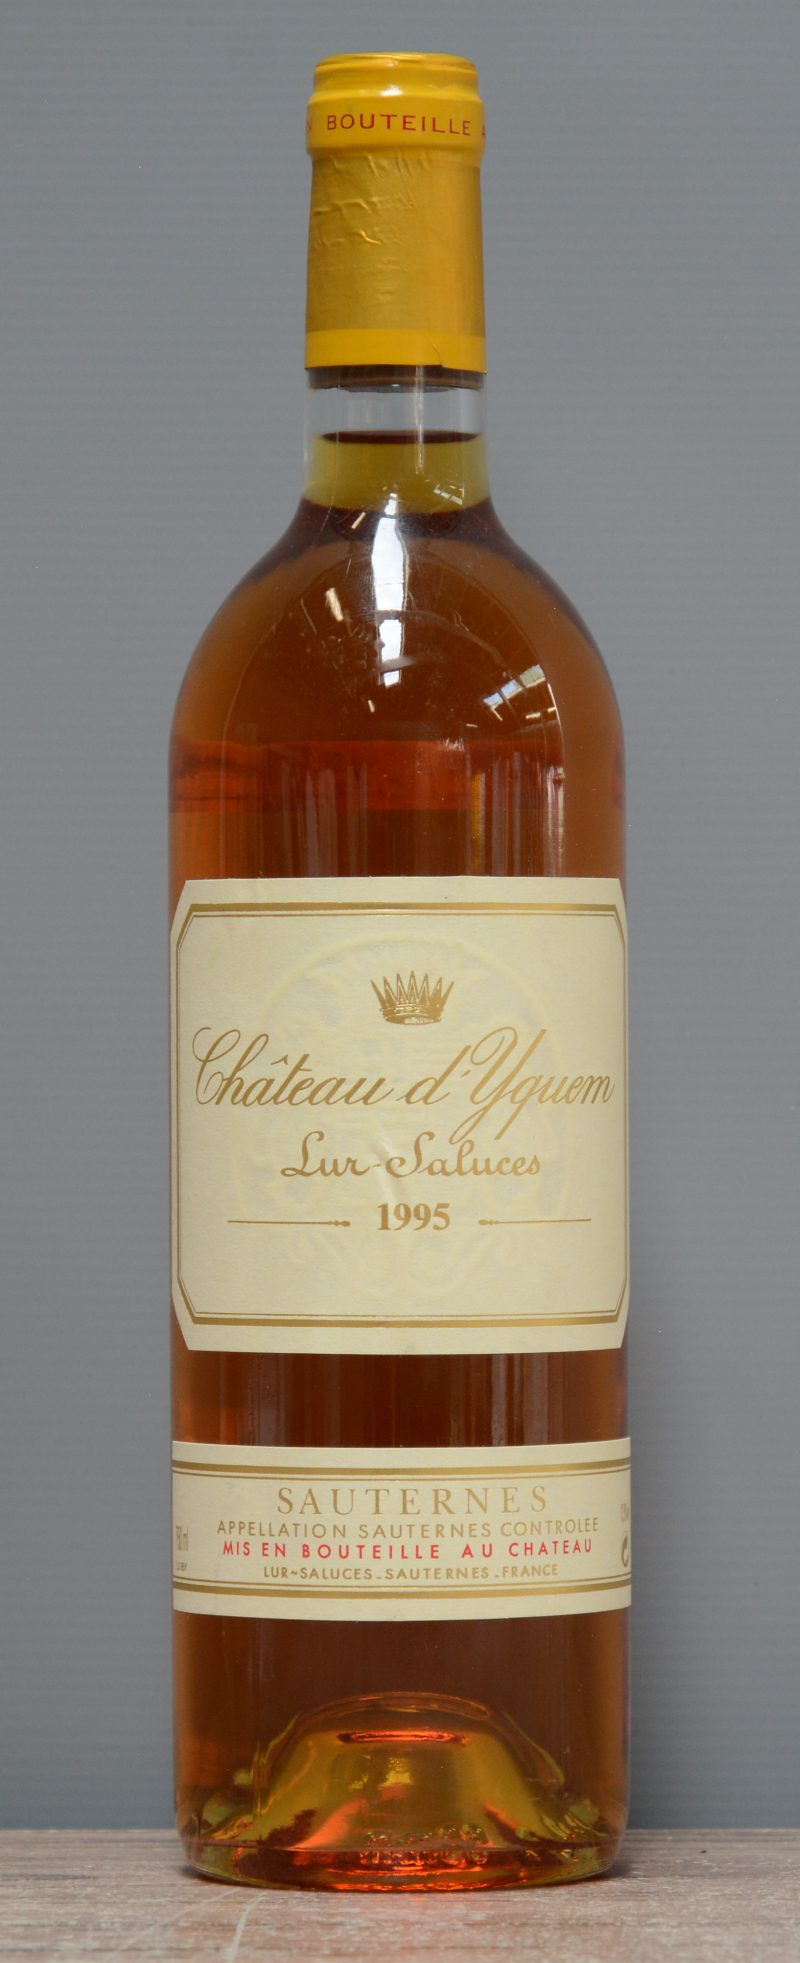 Ch. d’Yquem A.C. Sauternes 1e grand cru classé  M.C.  1995  aantal: 1 Bt.